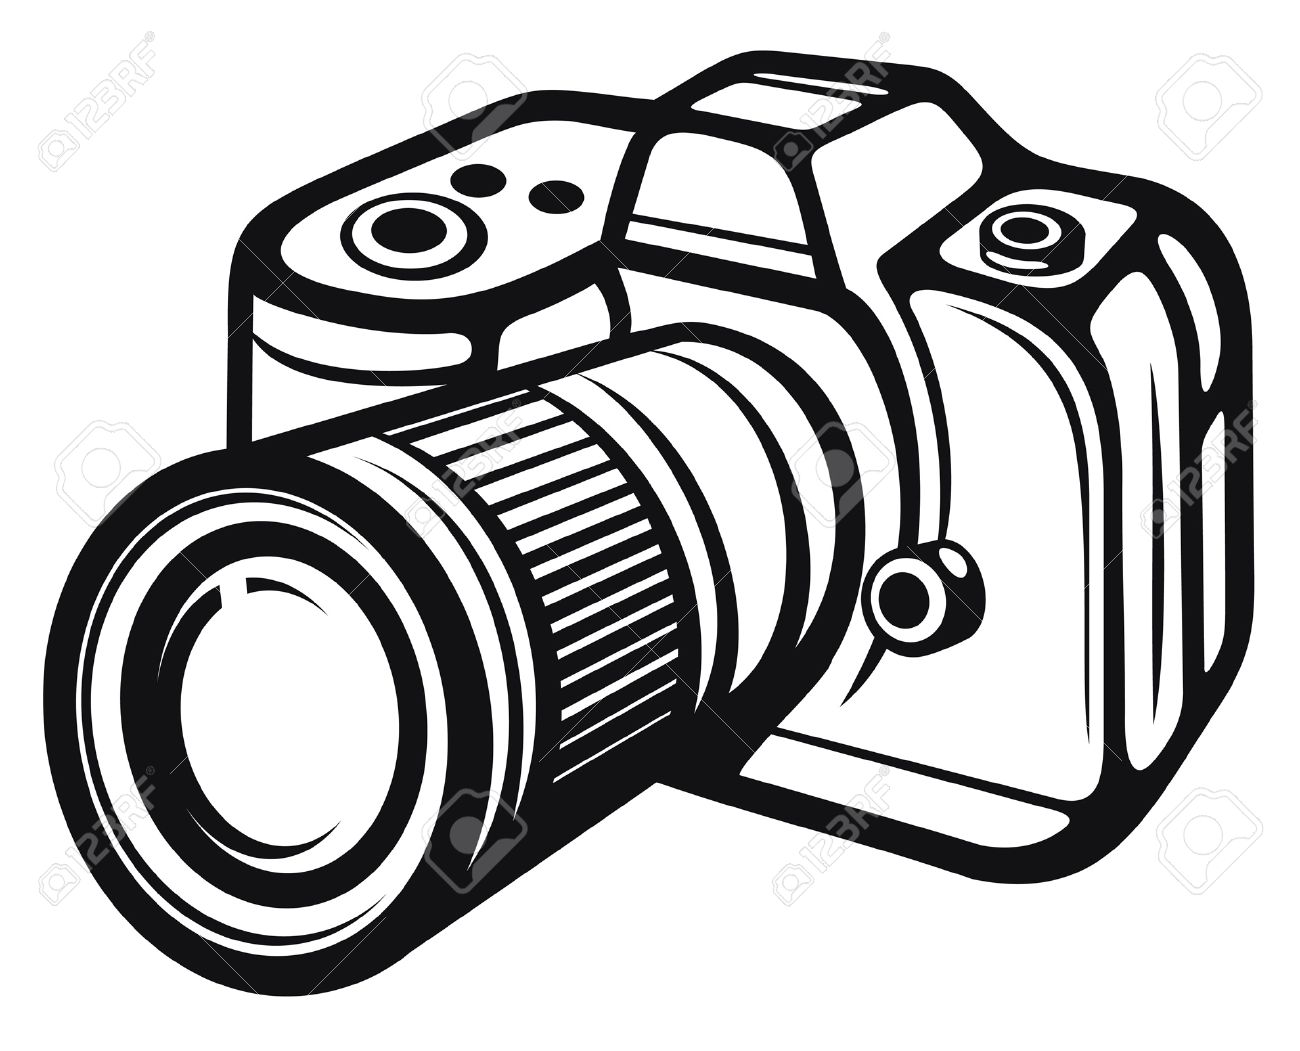 fotocamera.jpg